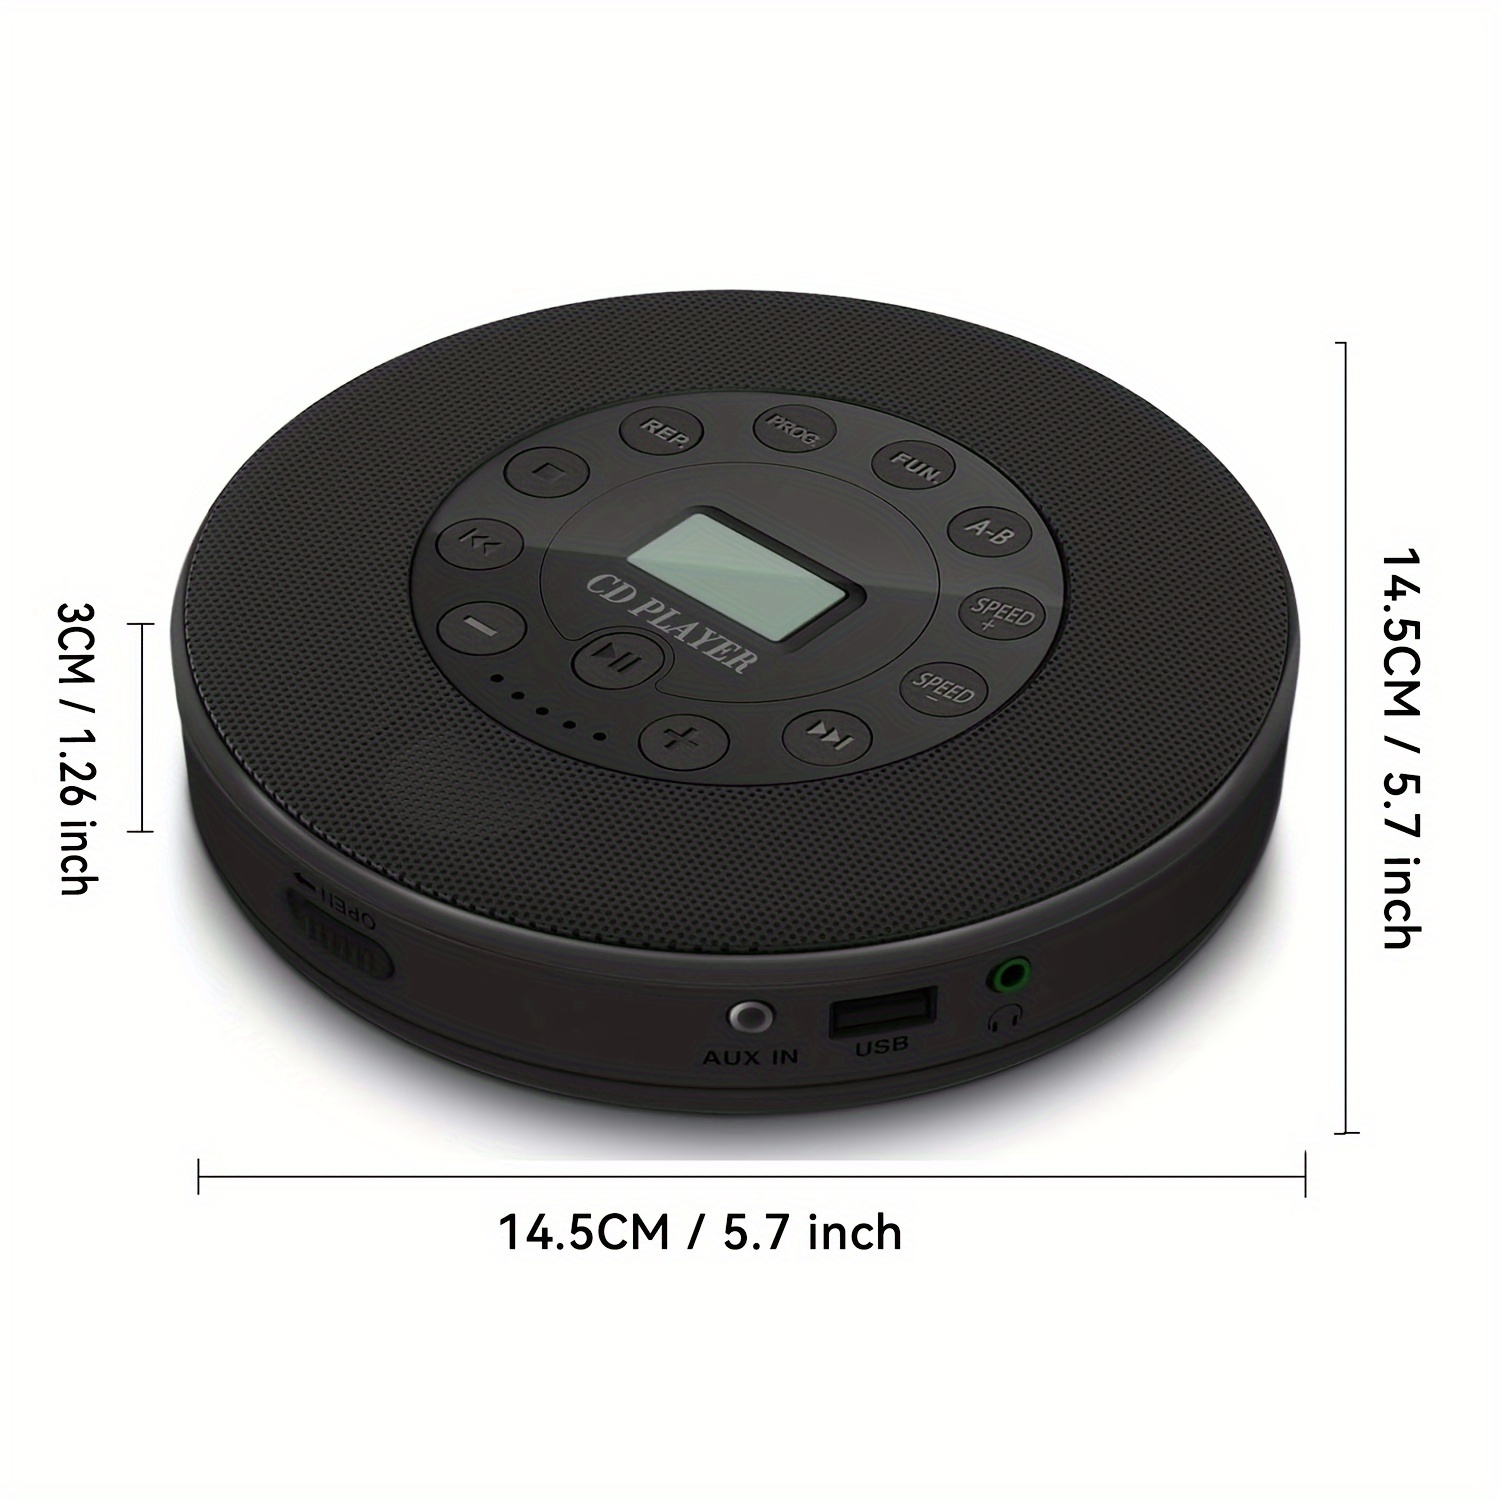 Reproductor de CD portátil para el hogar, reproductor de CD de escritorio  con altavoces estéreo, batería recargable, Bluetooth, radio Fm, control